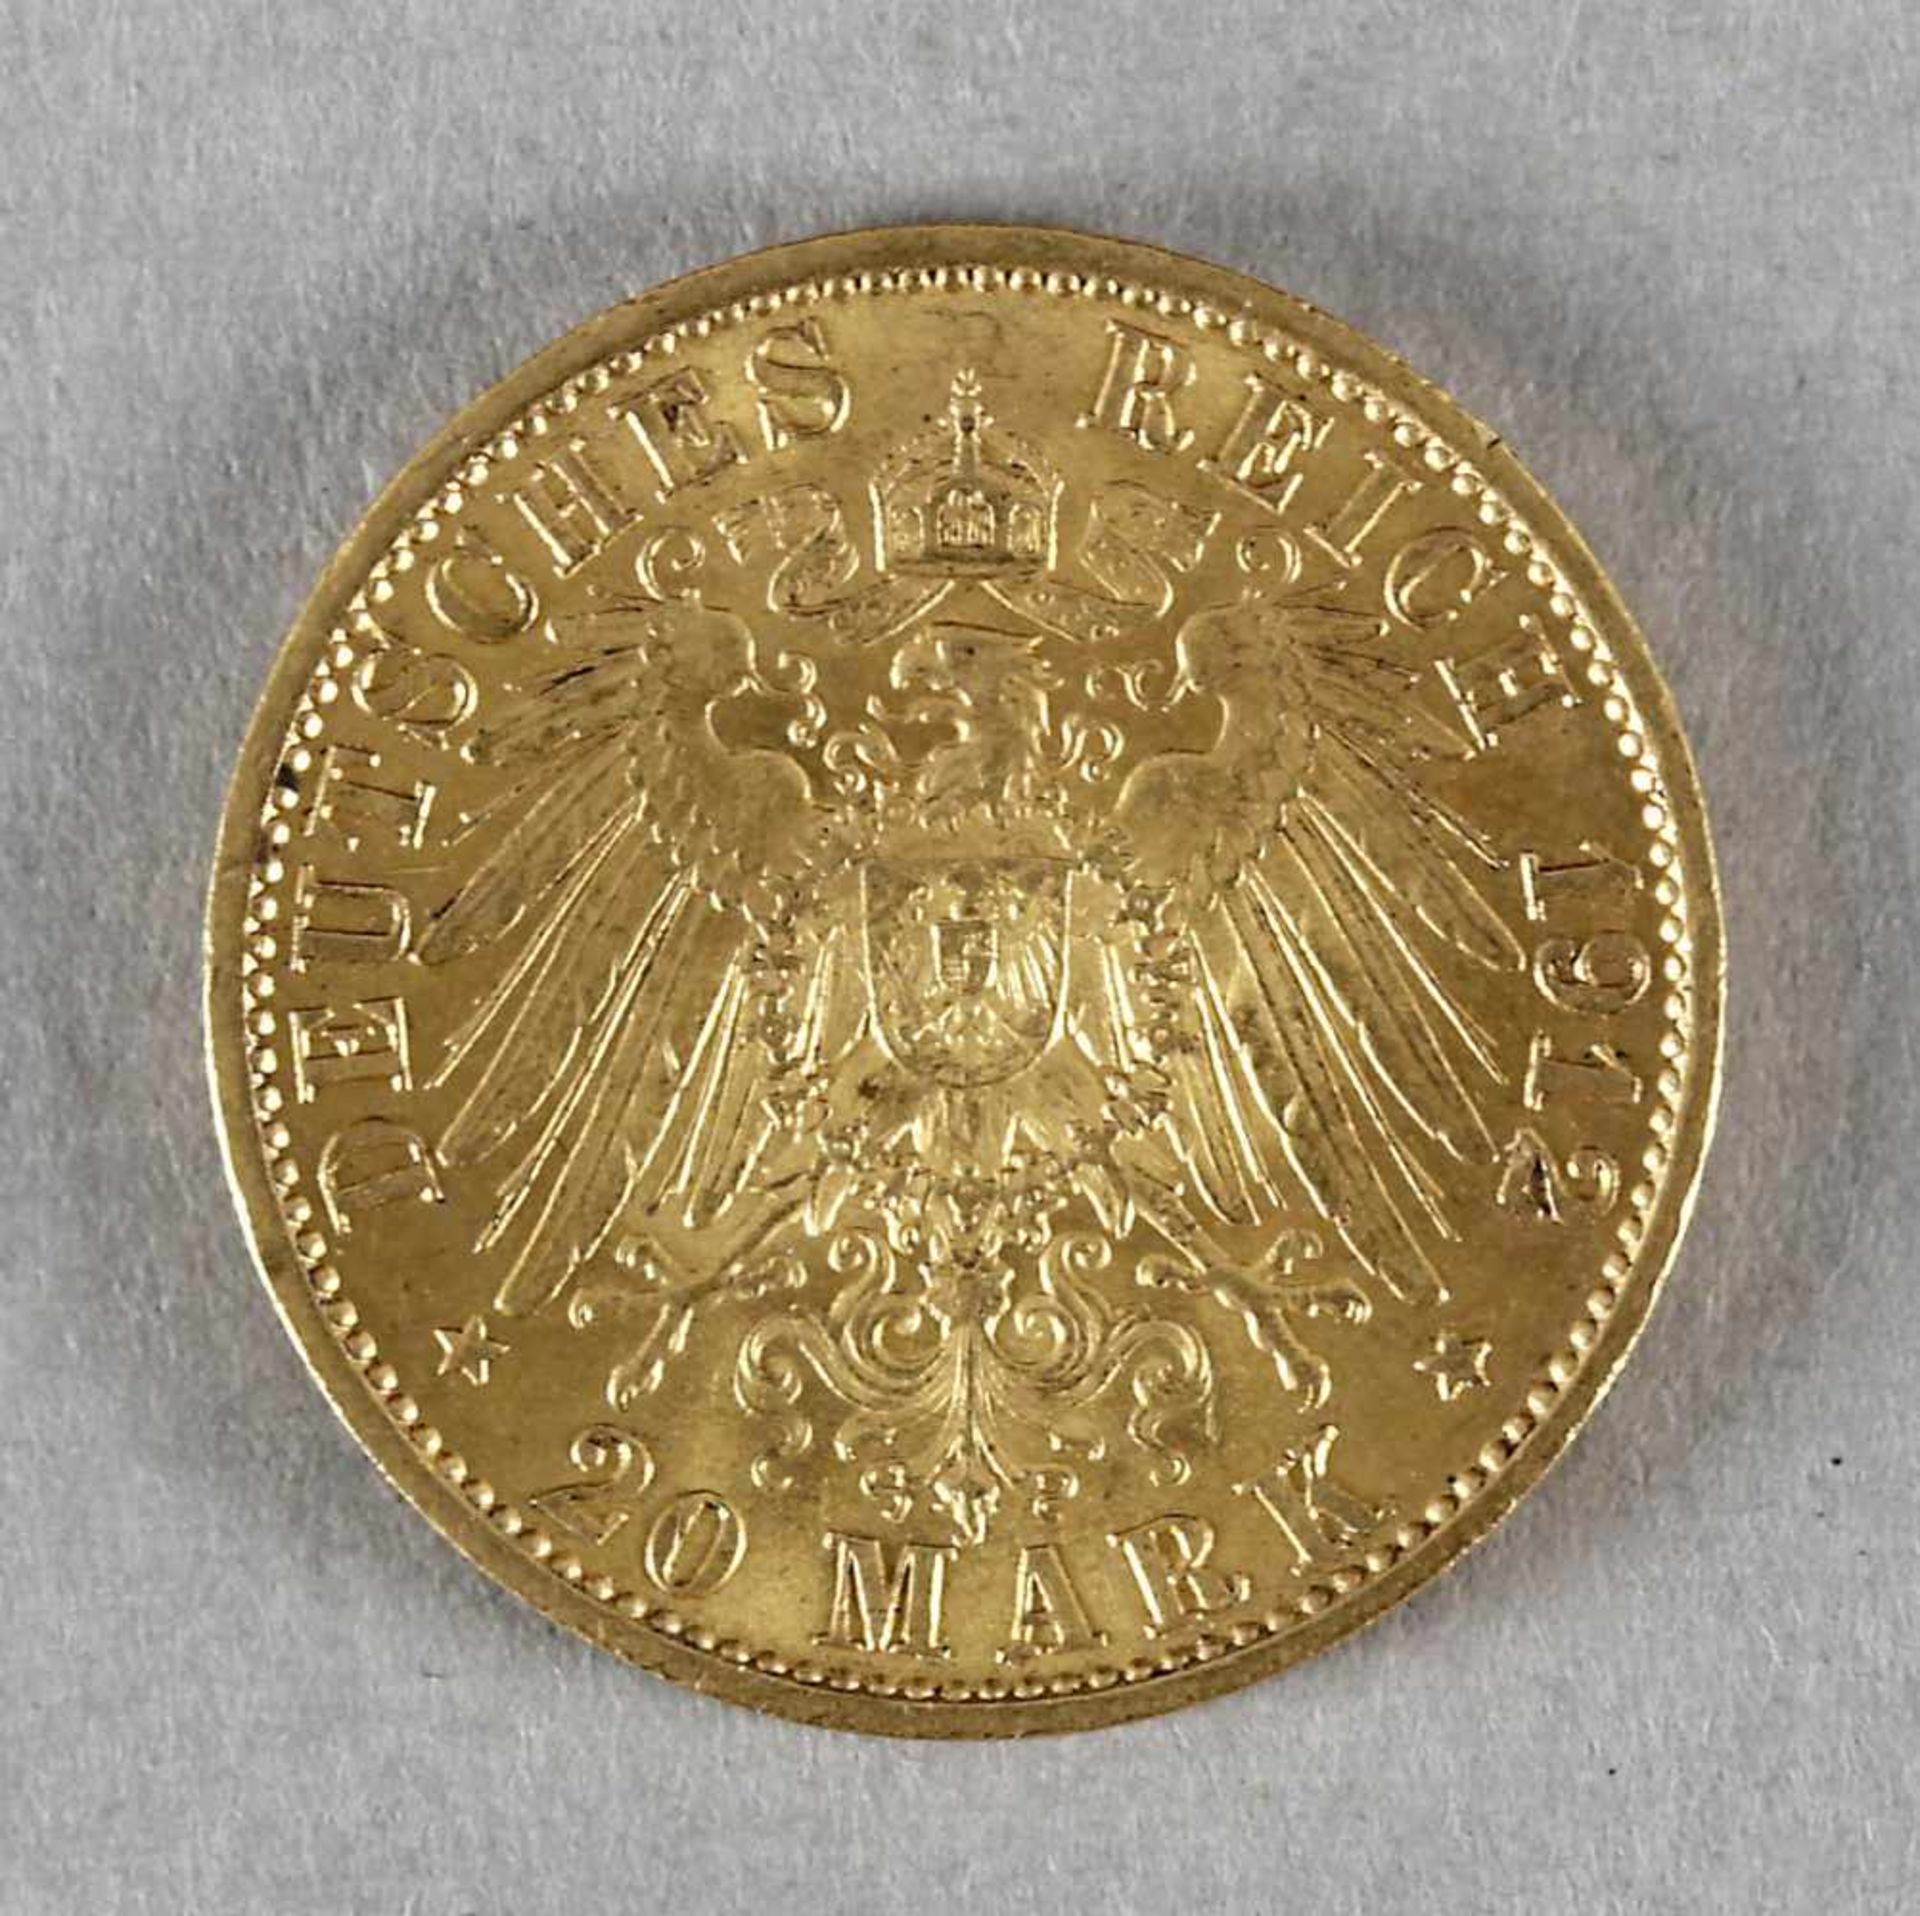 Goldmünze, 20 Mark, Wilhelm II. von Preußen, 1912 A - Bild 2 aus 2